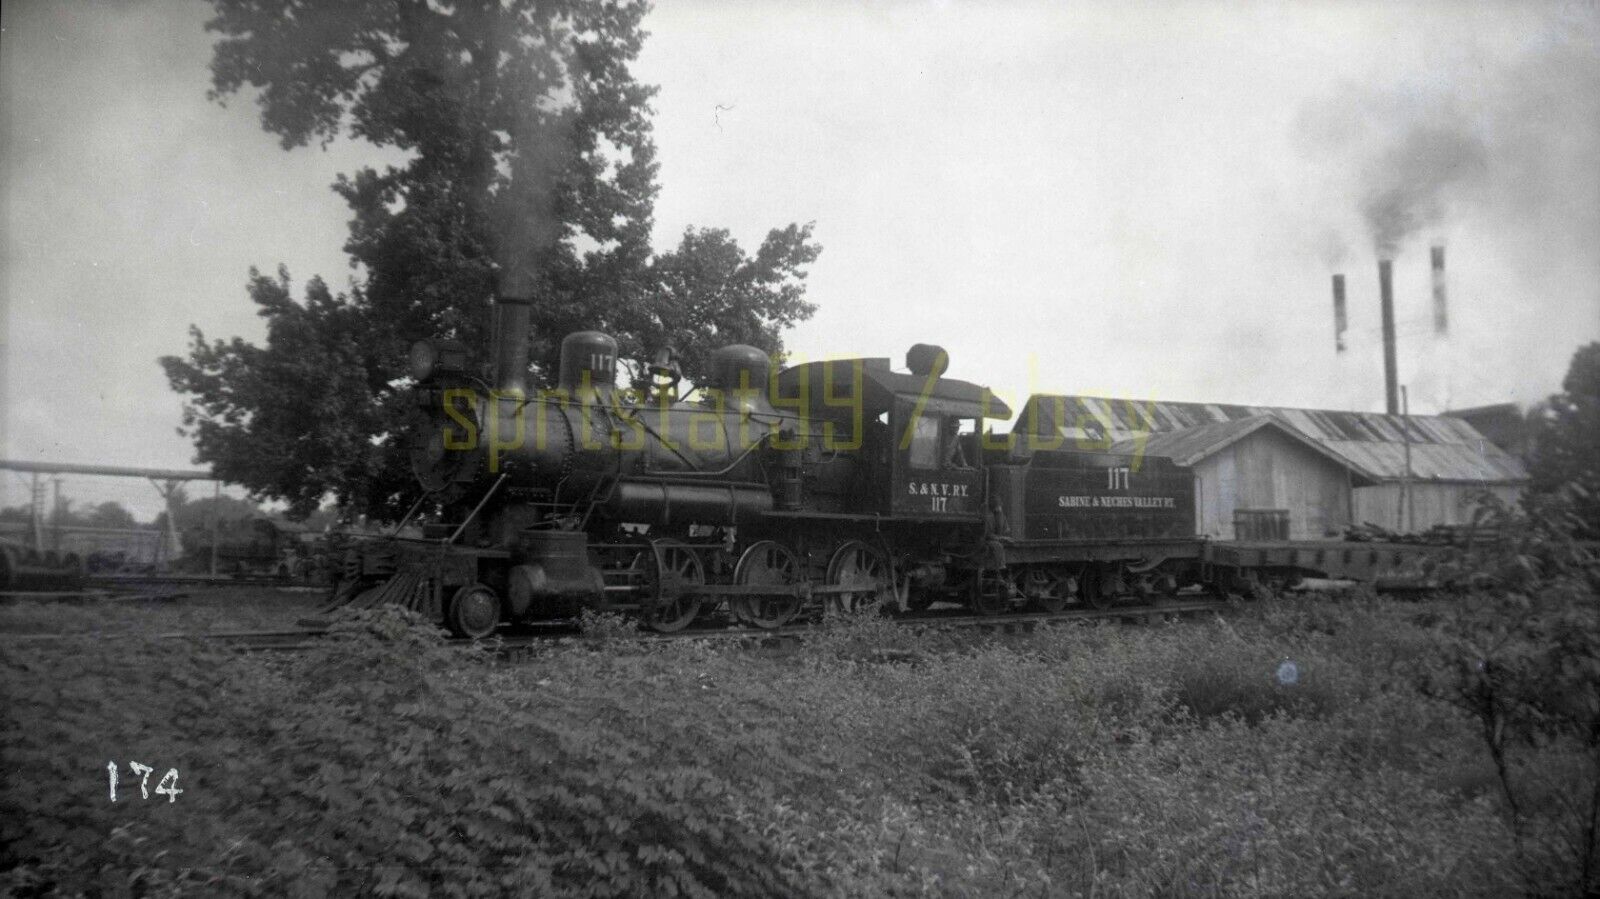 Sabine & Neches Valley Railway 4-6-0 Locomotive #117 - Vintage Railroad Negative